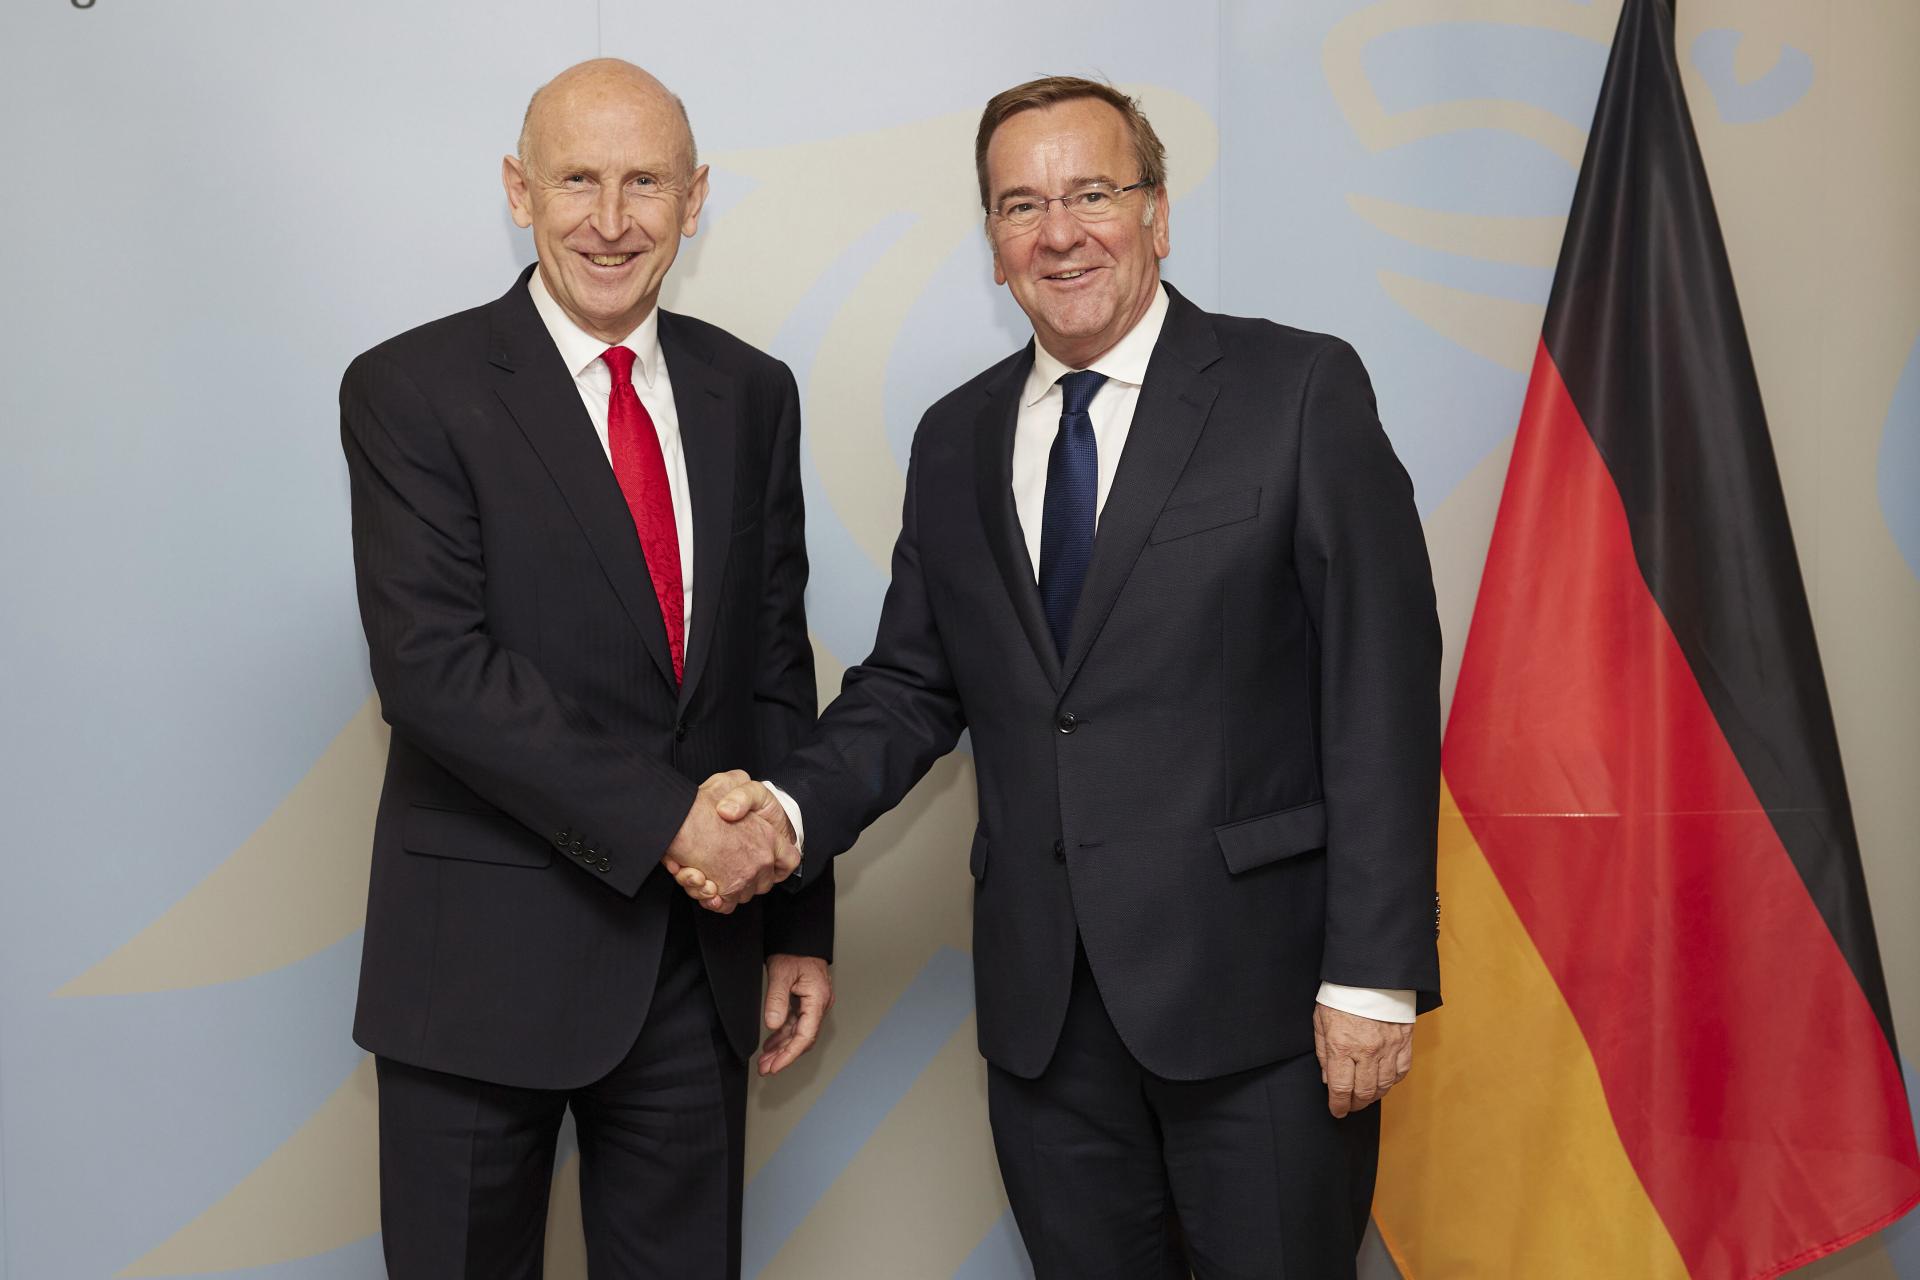 Nemecko a Británia podpísali spoločné obranné vyhlásenie, chcú posilniť bezpečnosť a podporiť Ukrajinu